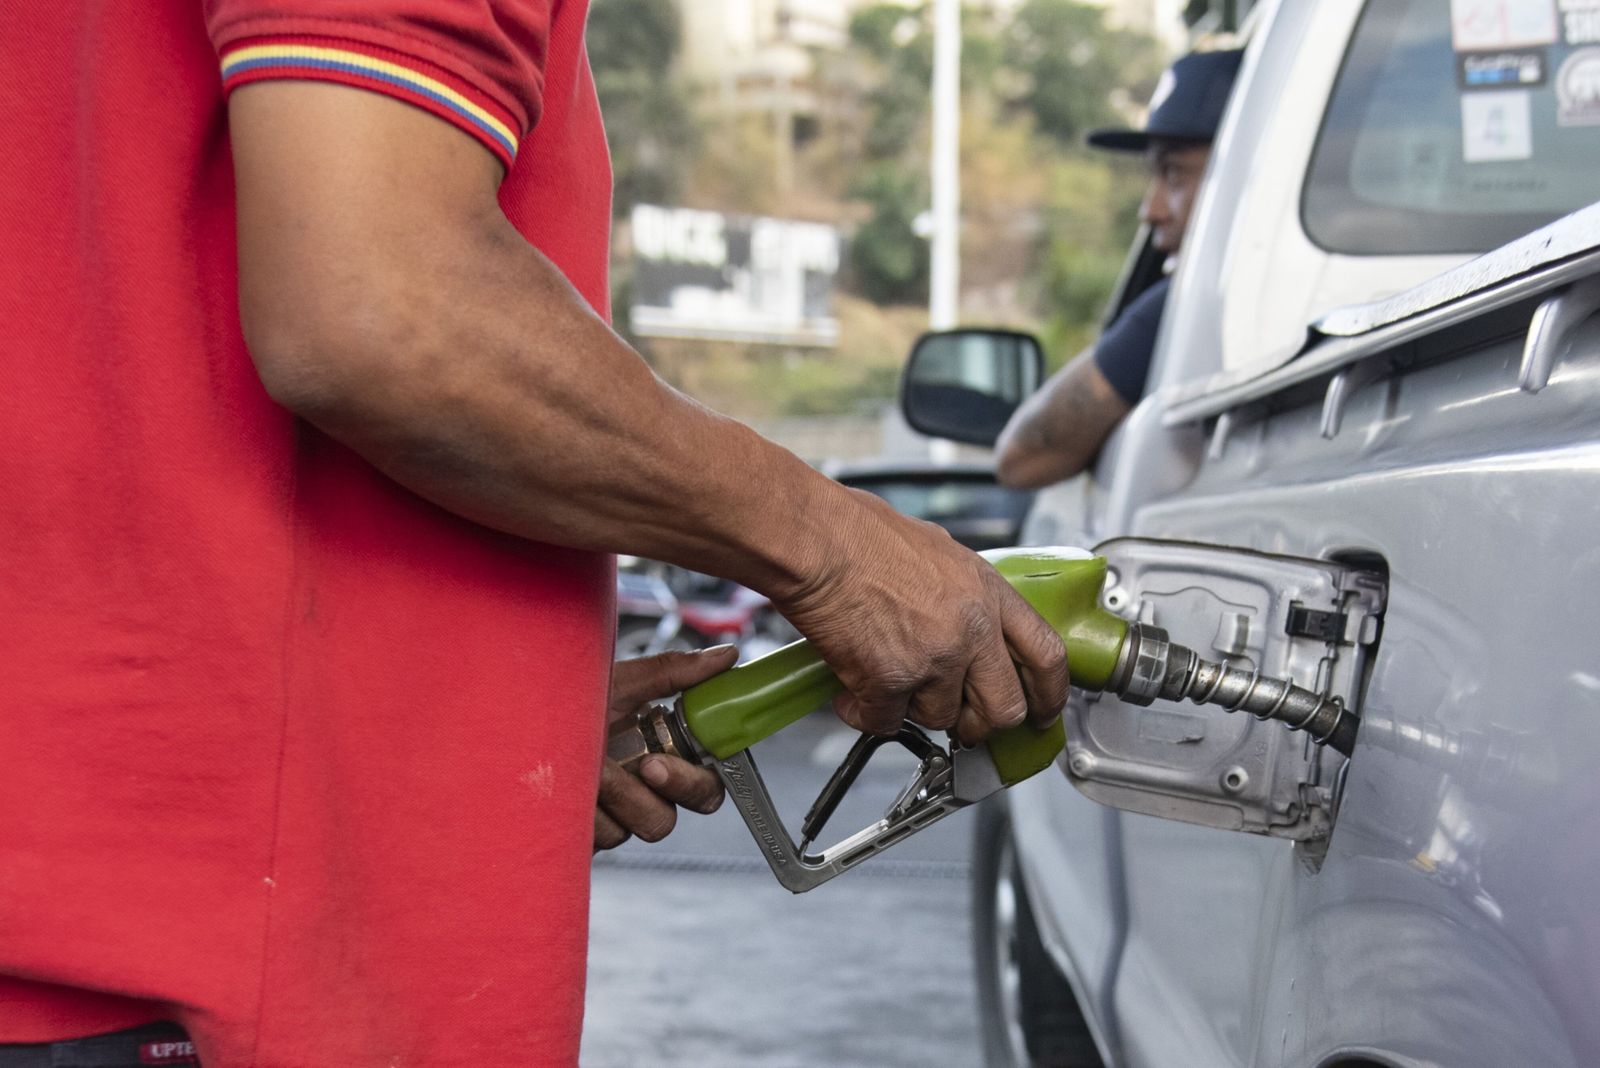 عمالقة النفط يمدون فنزويلا بالوقود بعد تخفيف العقوبات